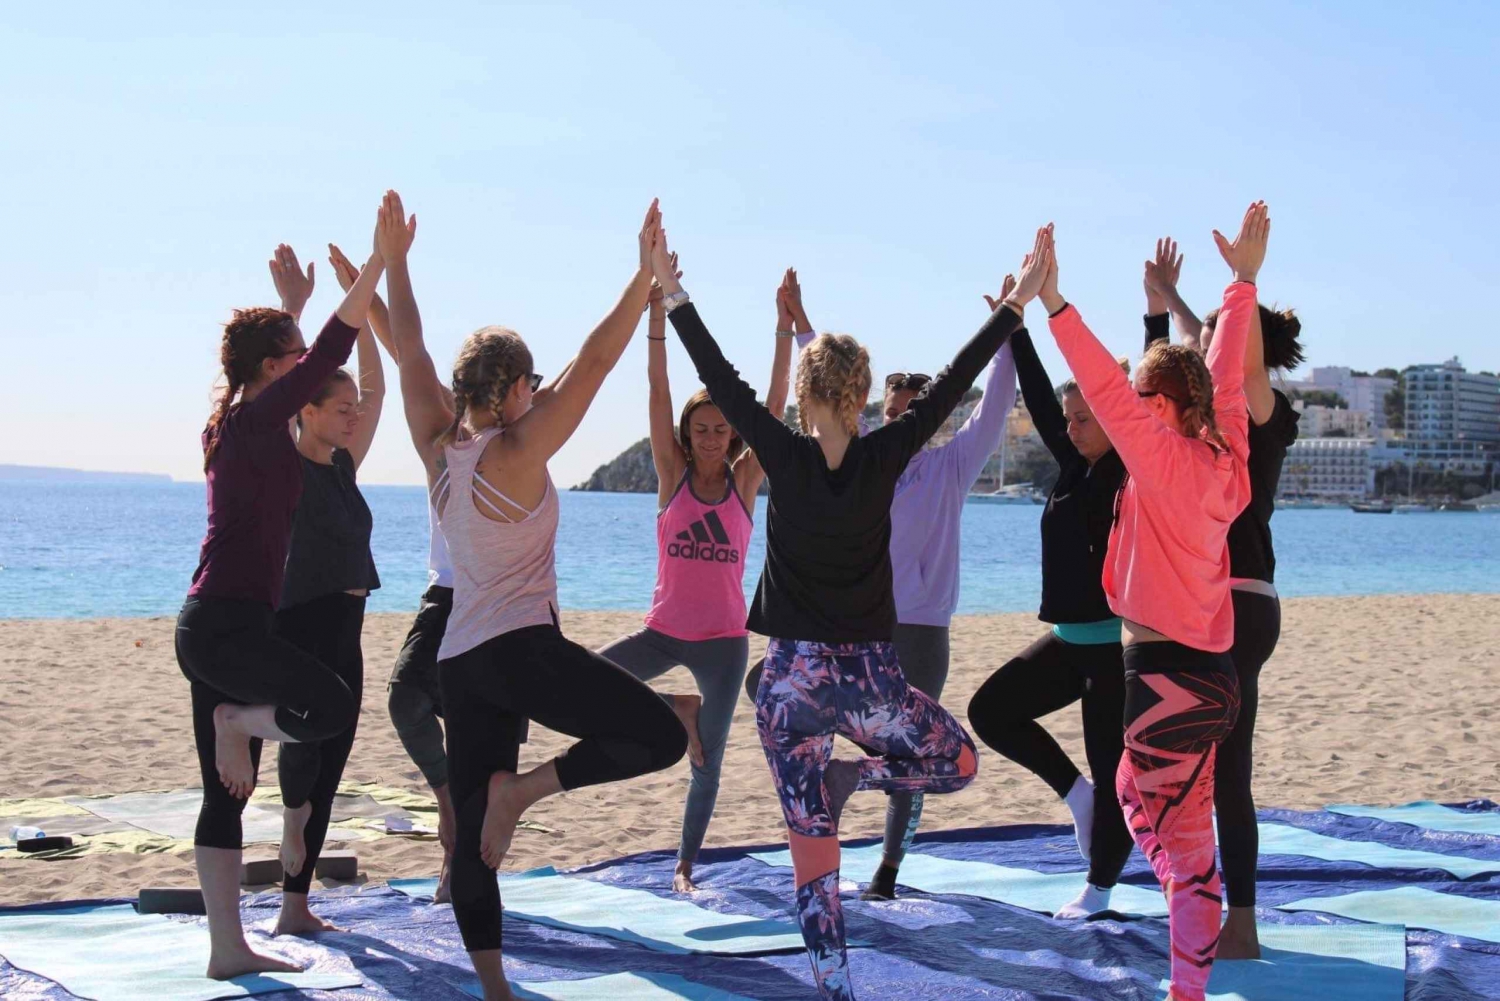 Mallorca: Yoga and Brunch on Palmanova Beach